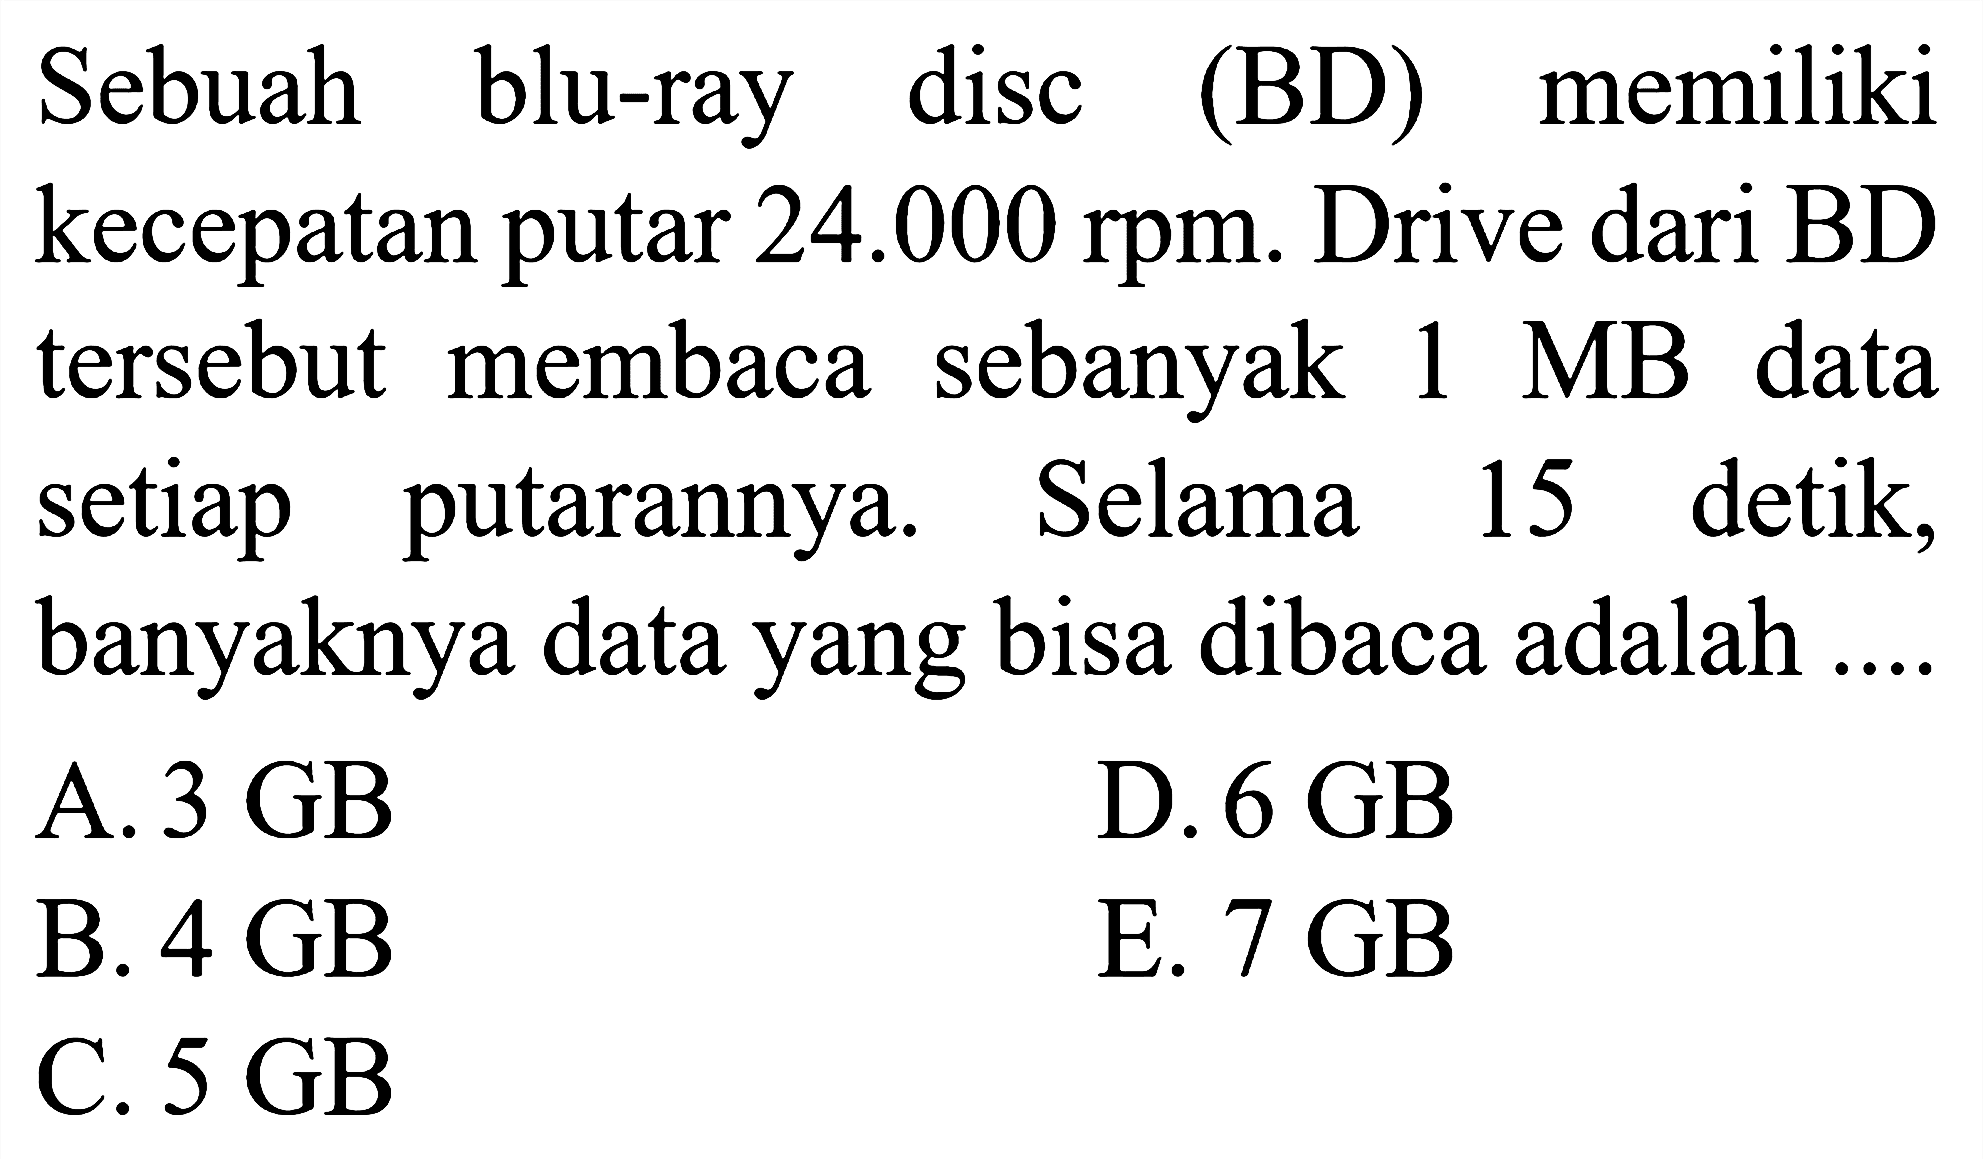 Sebuah blu-ray disc (BD) memiliki kecepatan putar 24.000 rpm. Drive dari BD tersebut membaca sebanyak 1 MB data setiap putarannya. Selama 15 detik, banyaknya data yang bisa dibaca adalah ...
